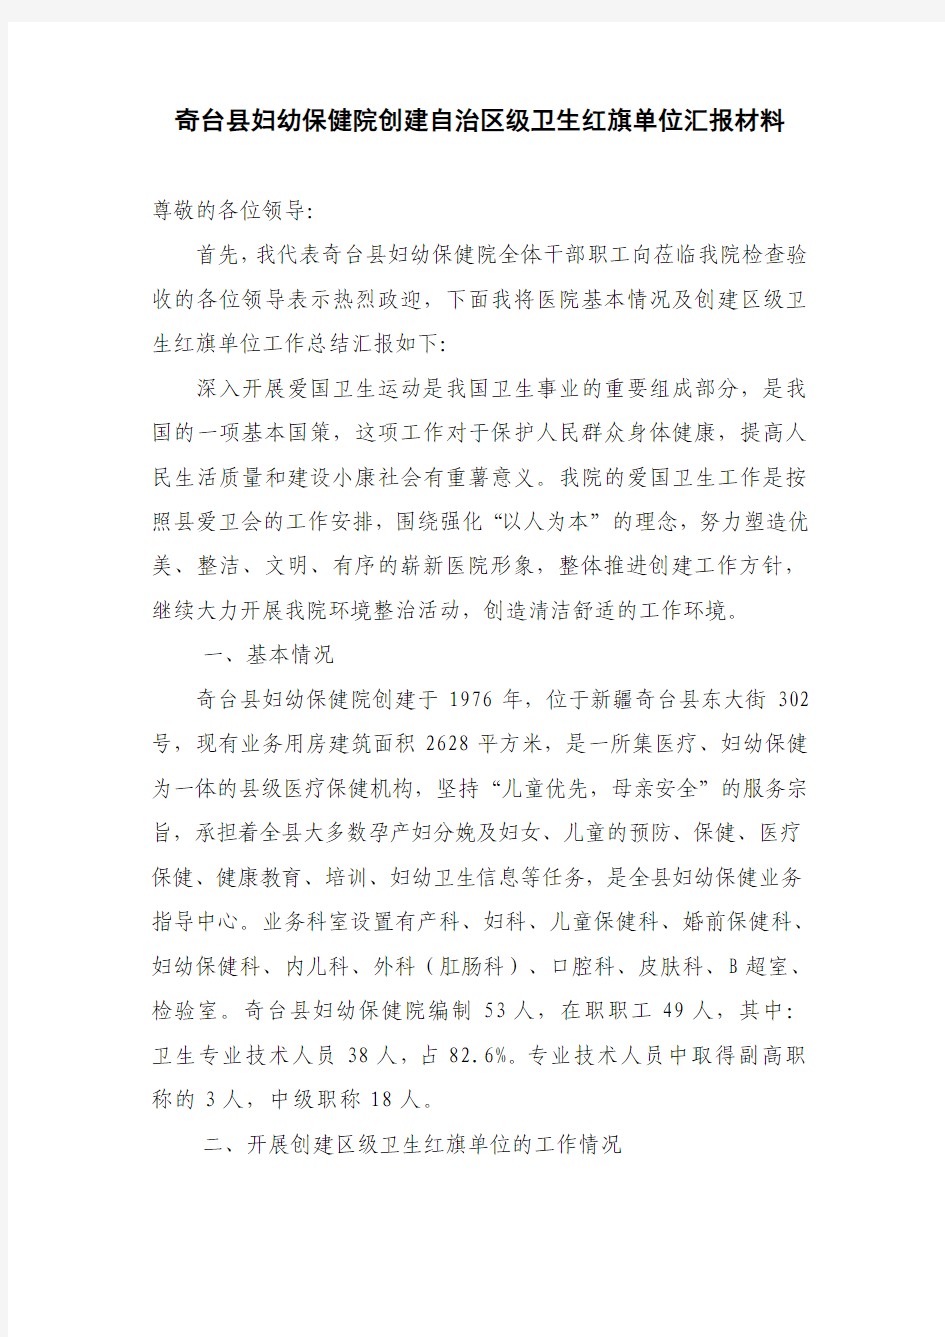 奇台县妇幼保健院创建自治区级卫生红旗单位汇报材料